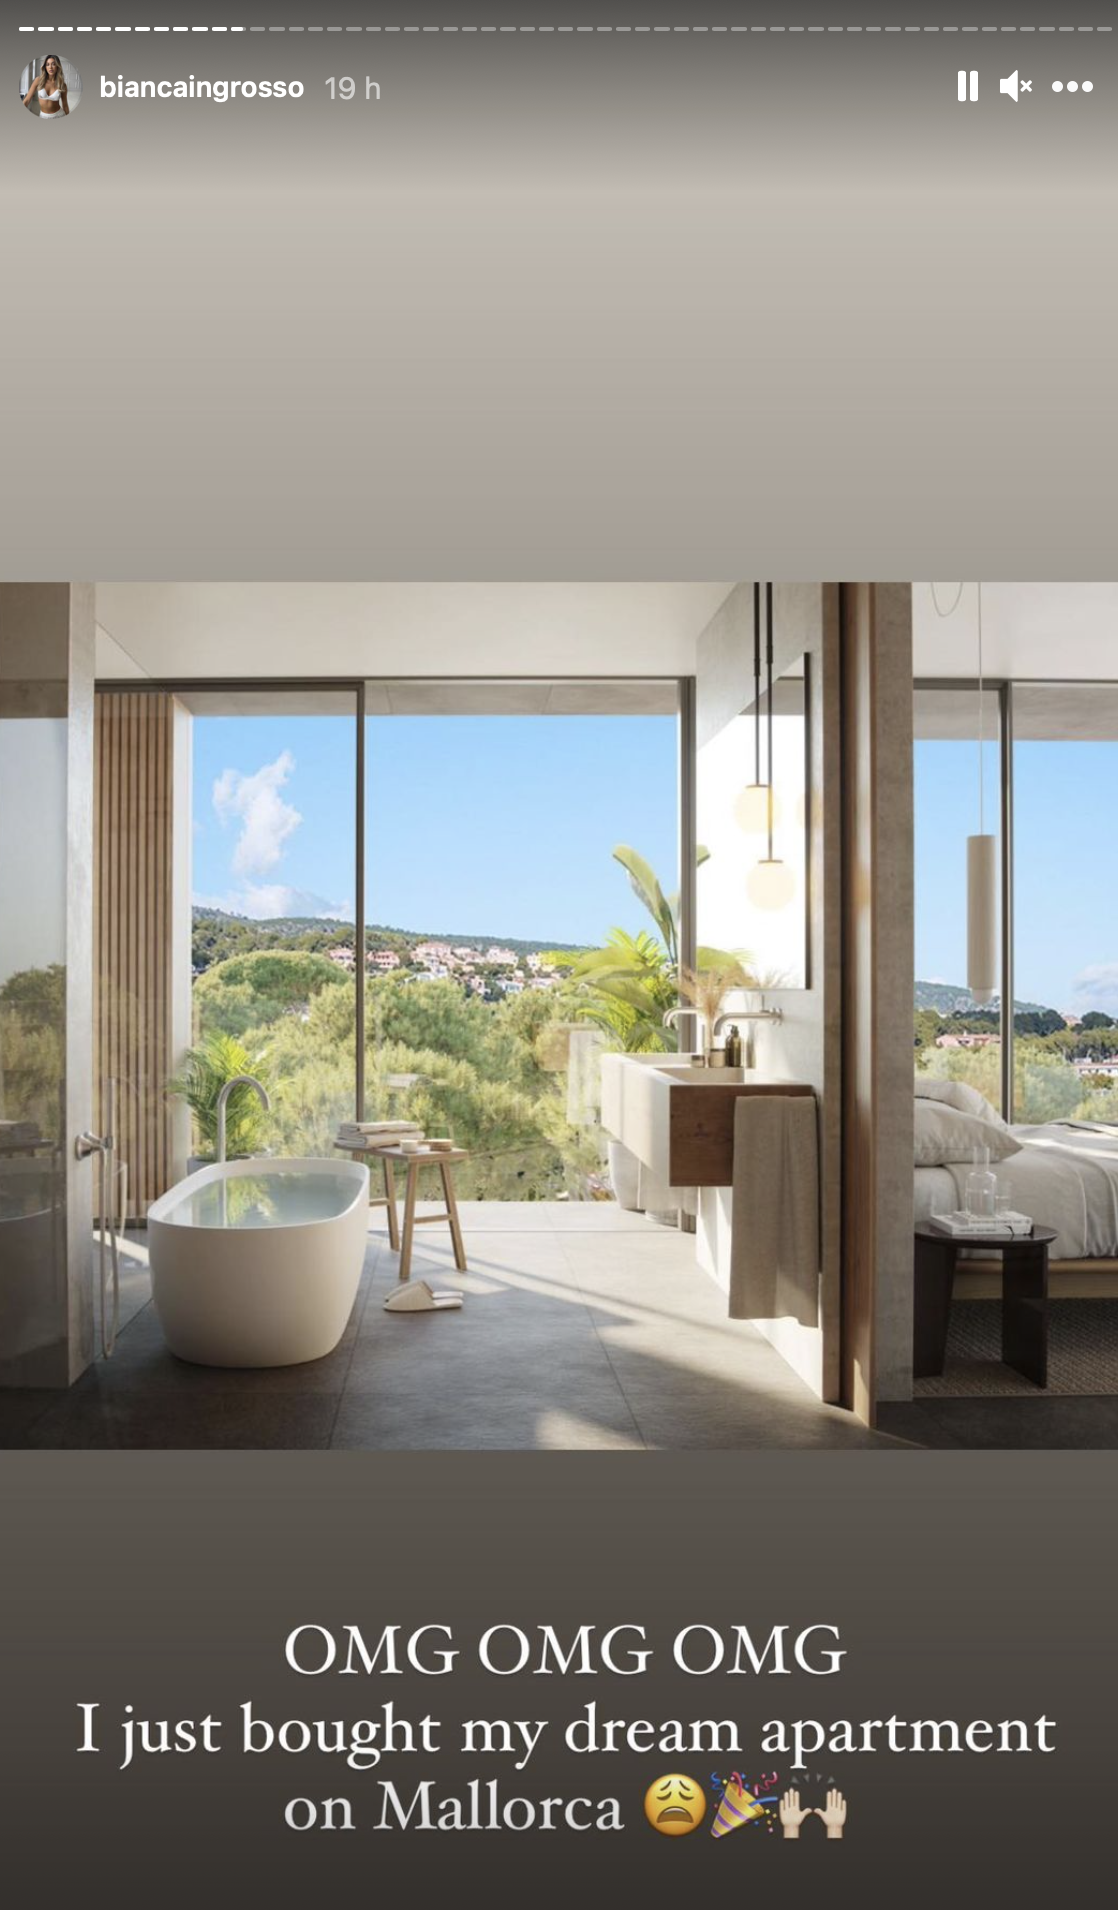 Bild på en lägenhet med texten "OMG OMG OMG I just bought my dream apartment on Mallorca!